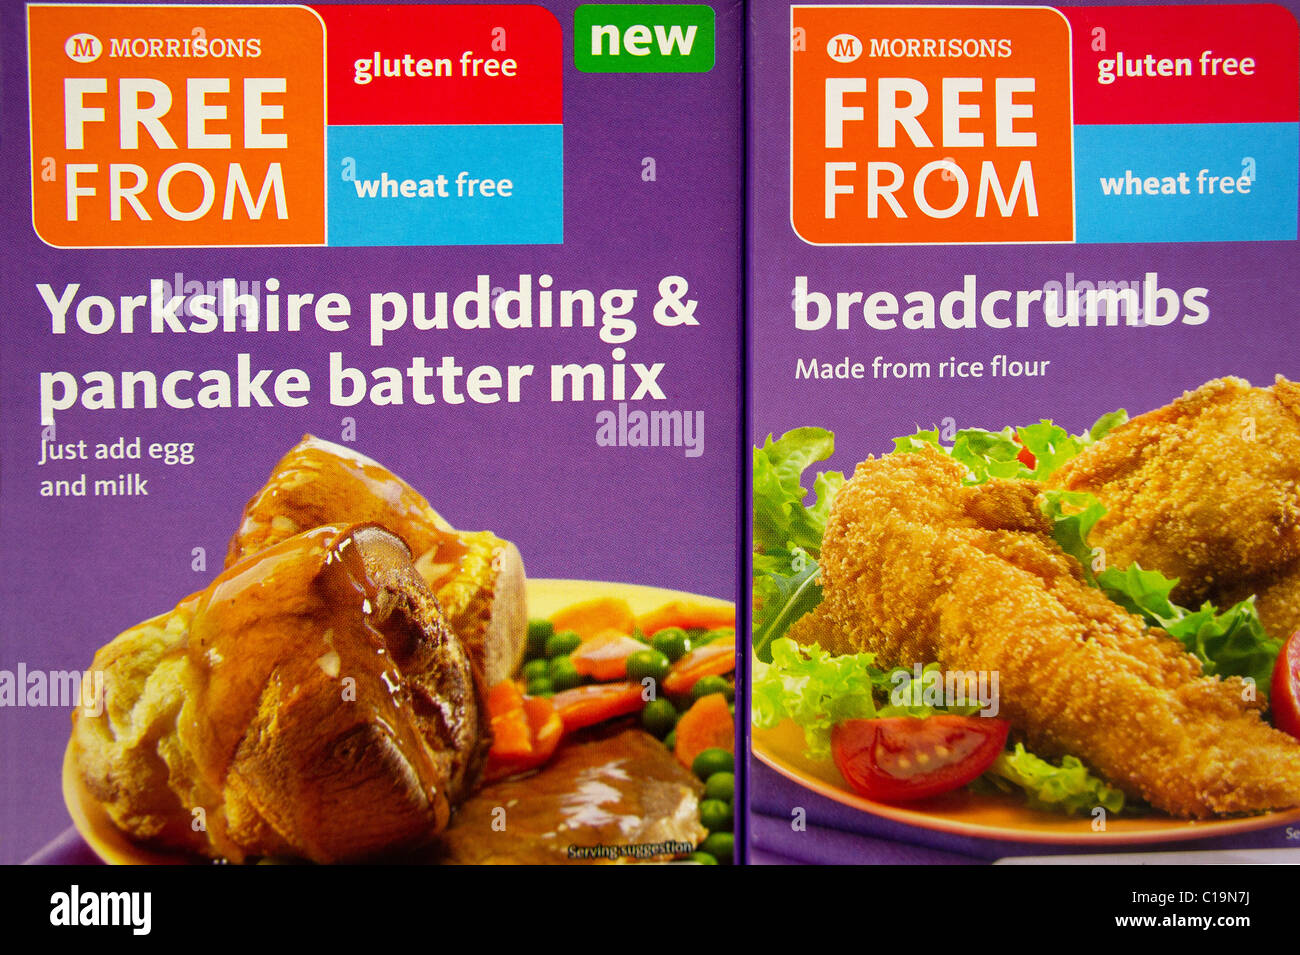 Pakete von Gluten und Weizen Gratisprodukte in eine britische Supermarktkette Stockfoto